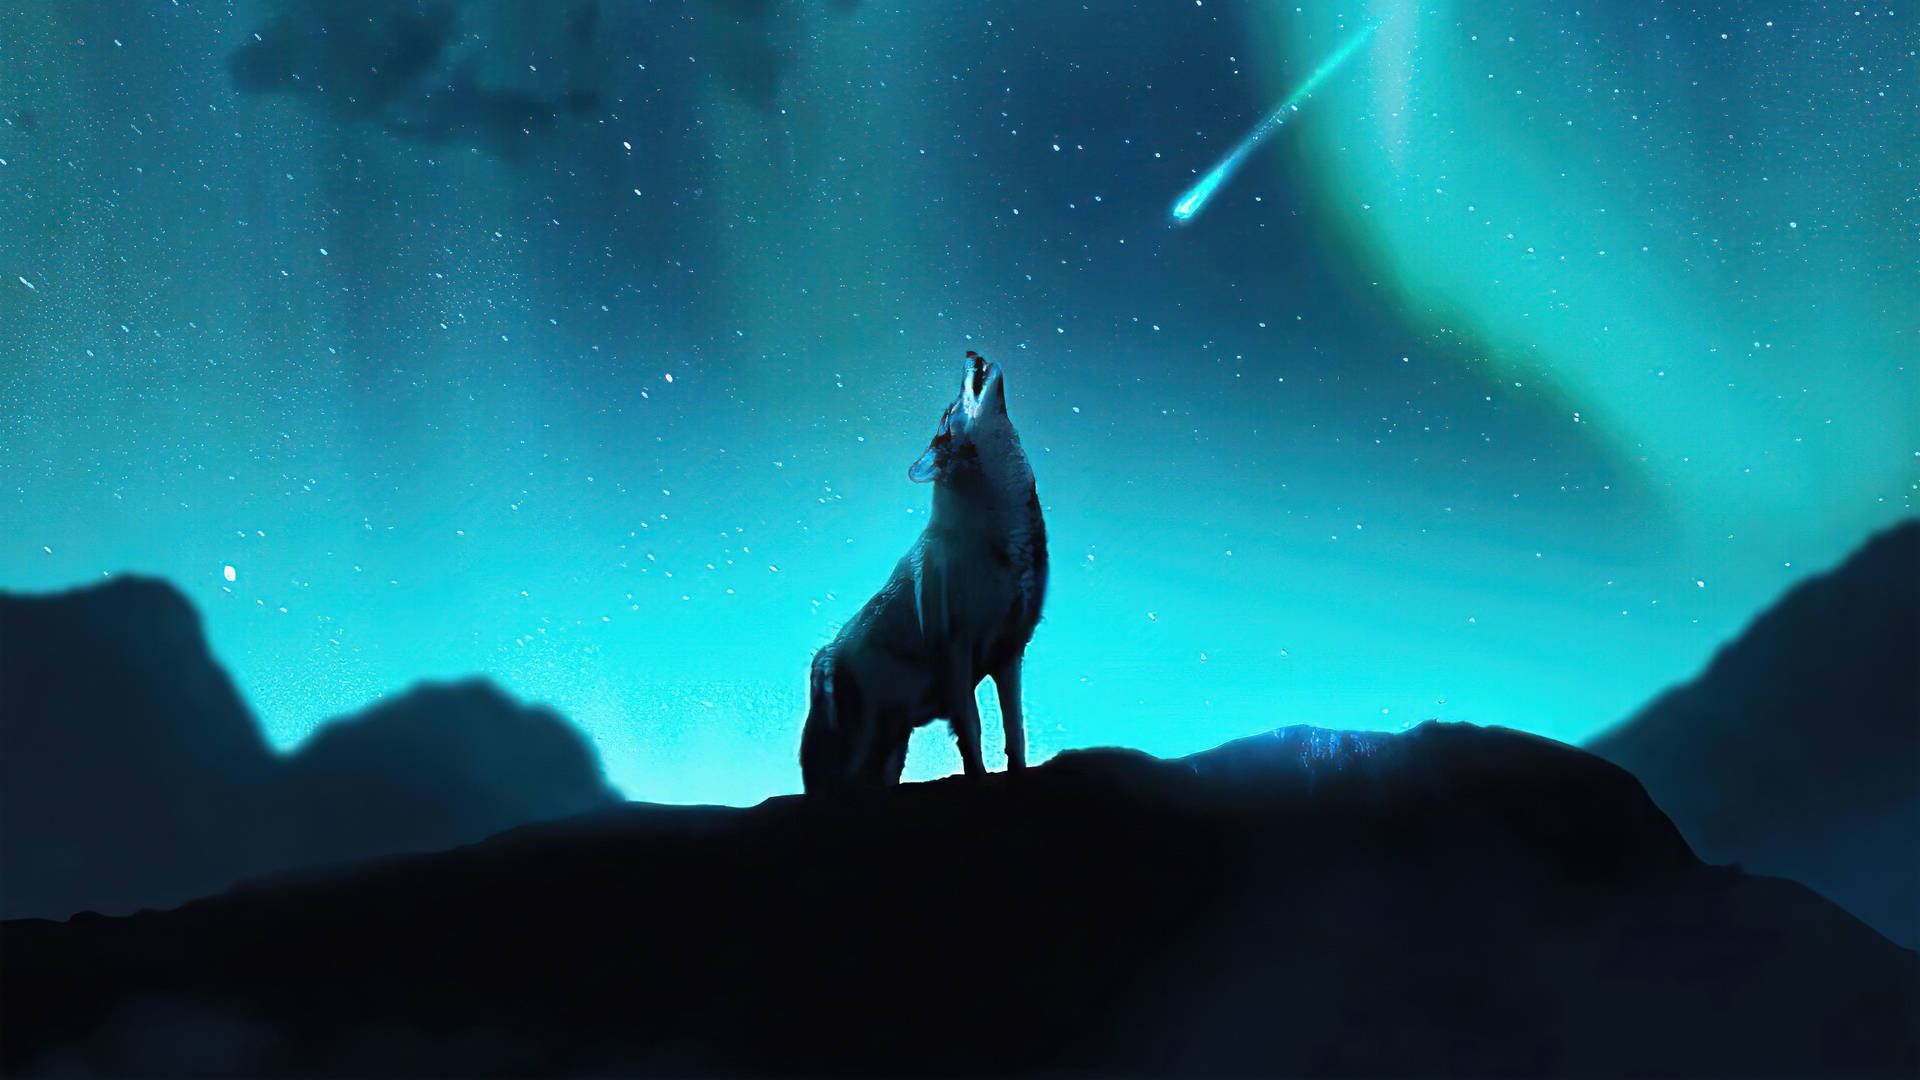 1920x1080 Hd Howling Wolf Aurora Borealis